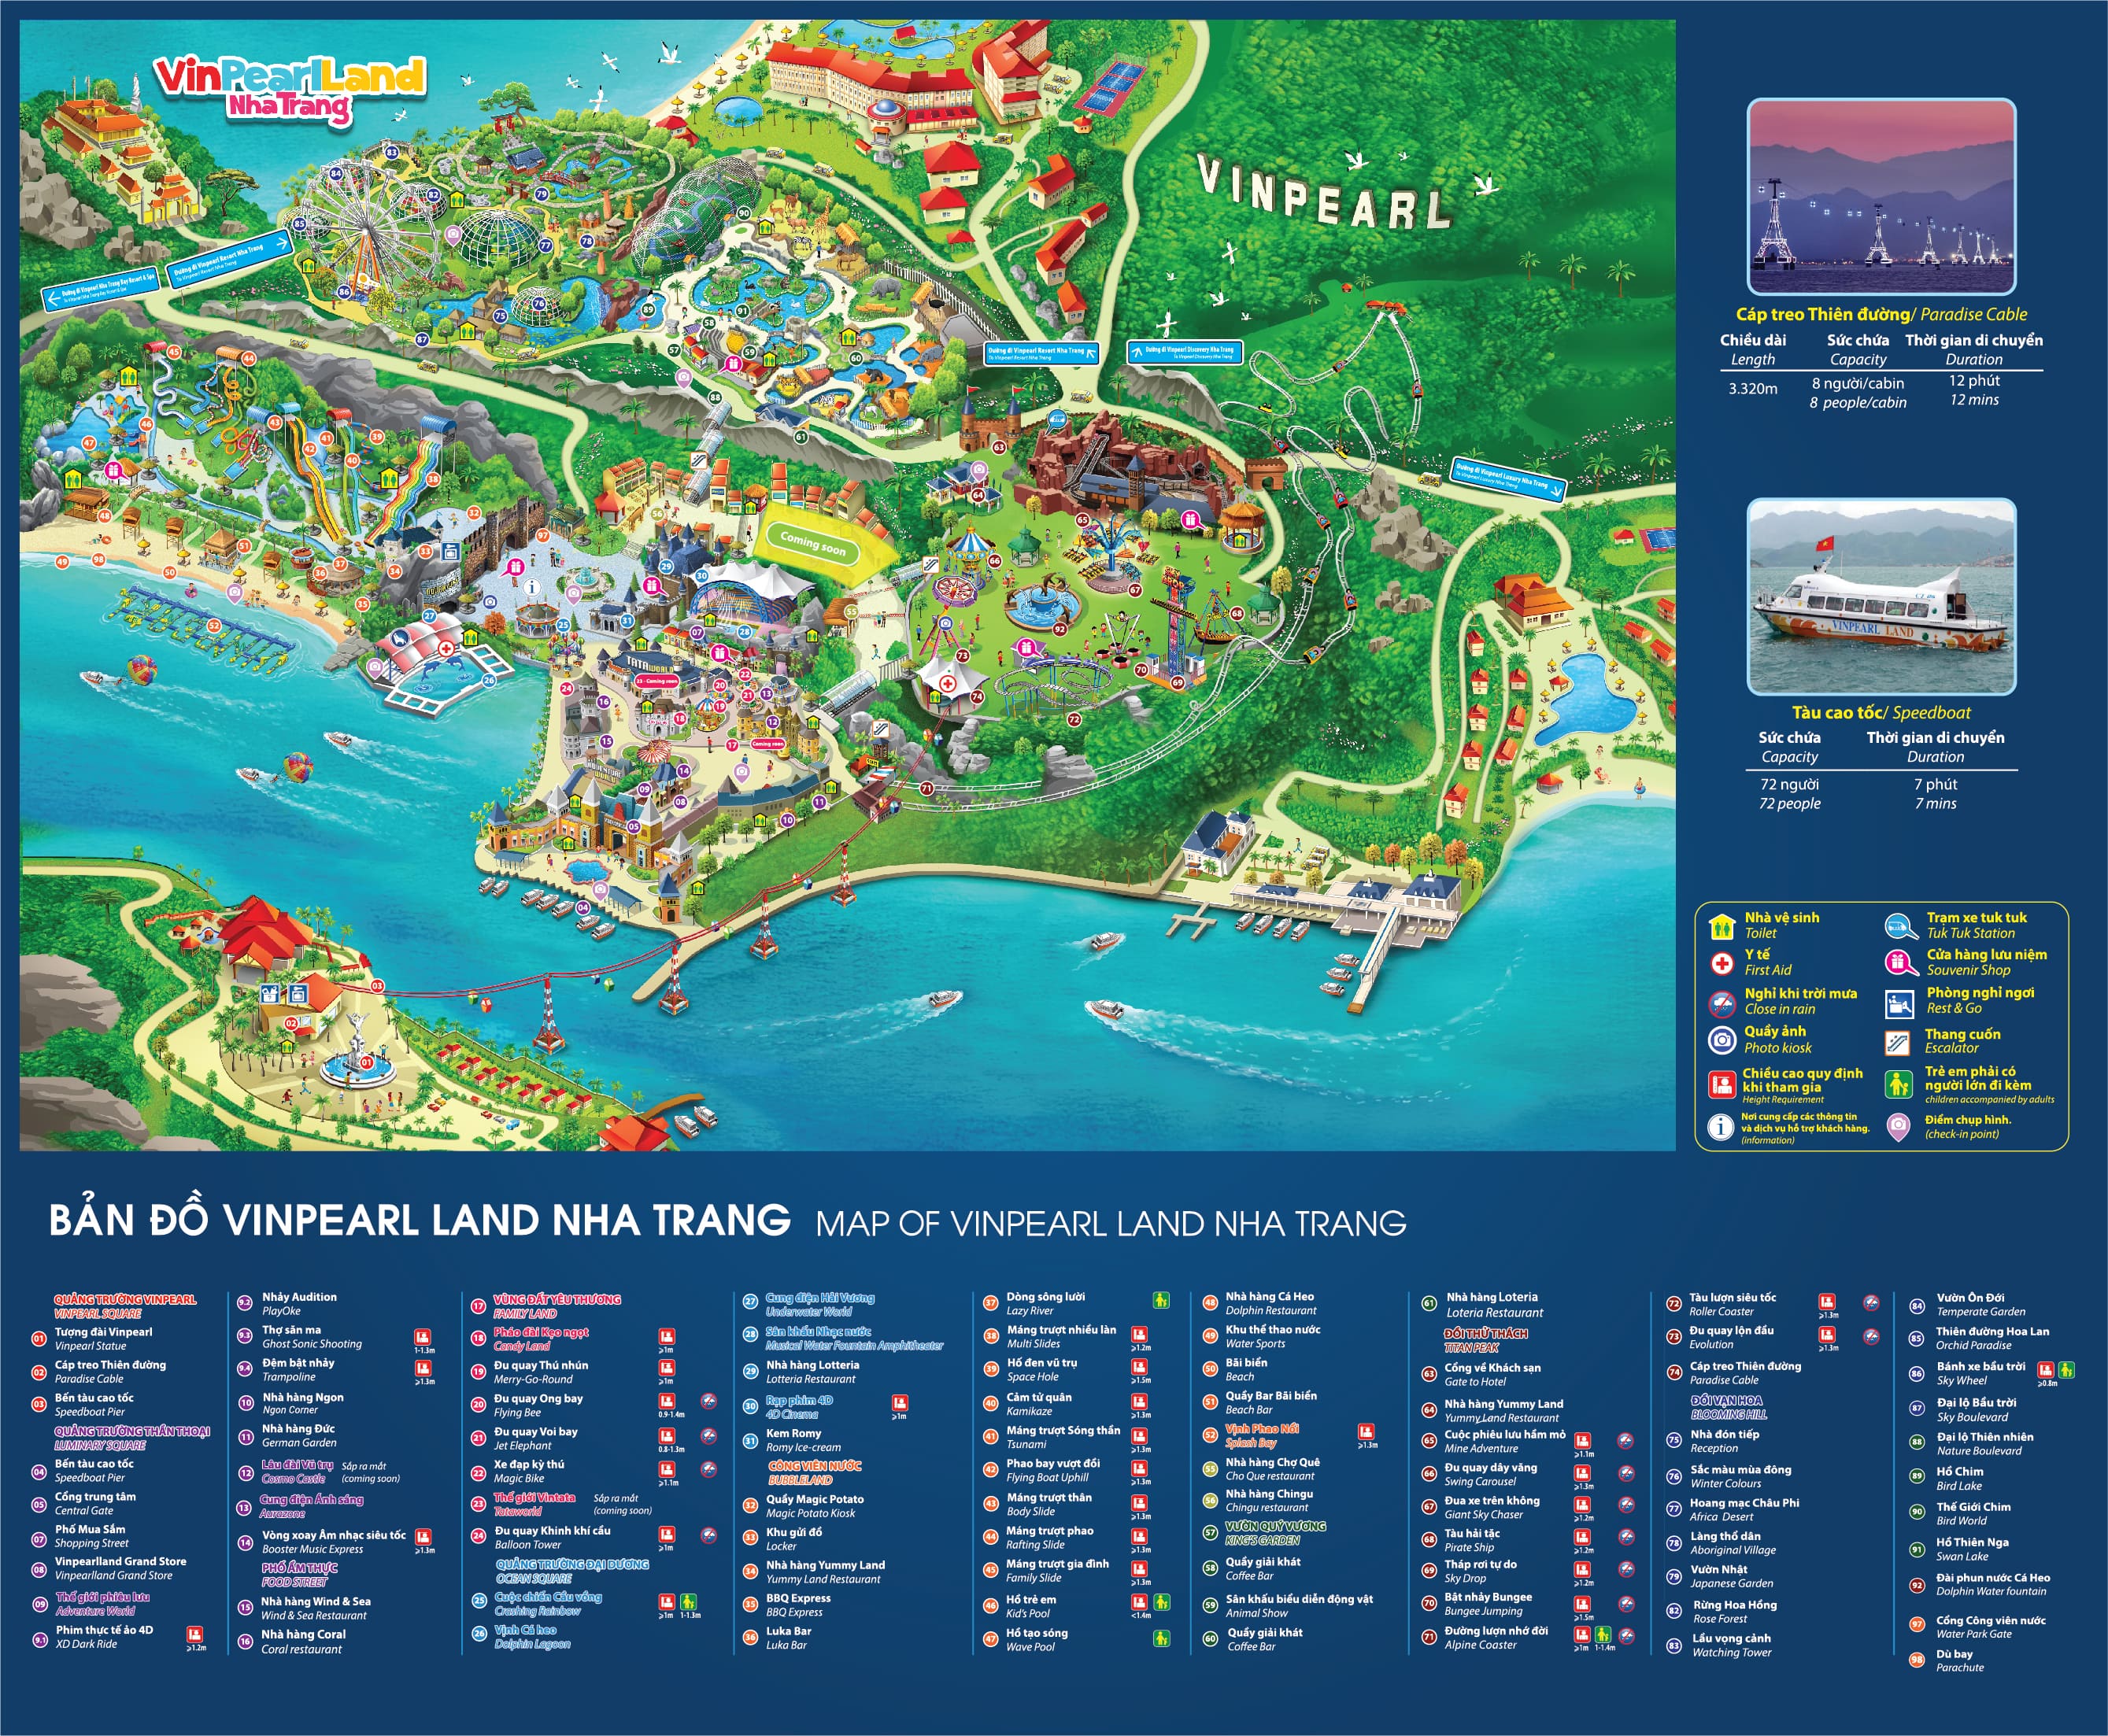 Bản đồ Vinpearl Land Nha Trang - Hướng dẫn chi tiết nhất